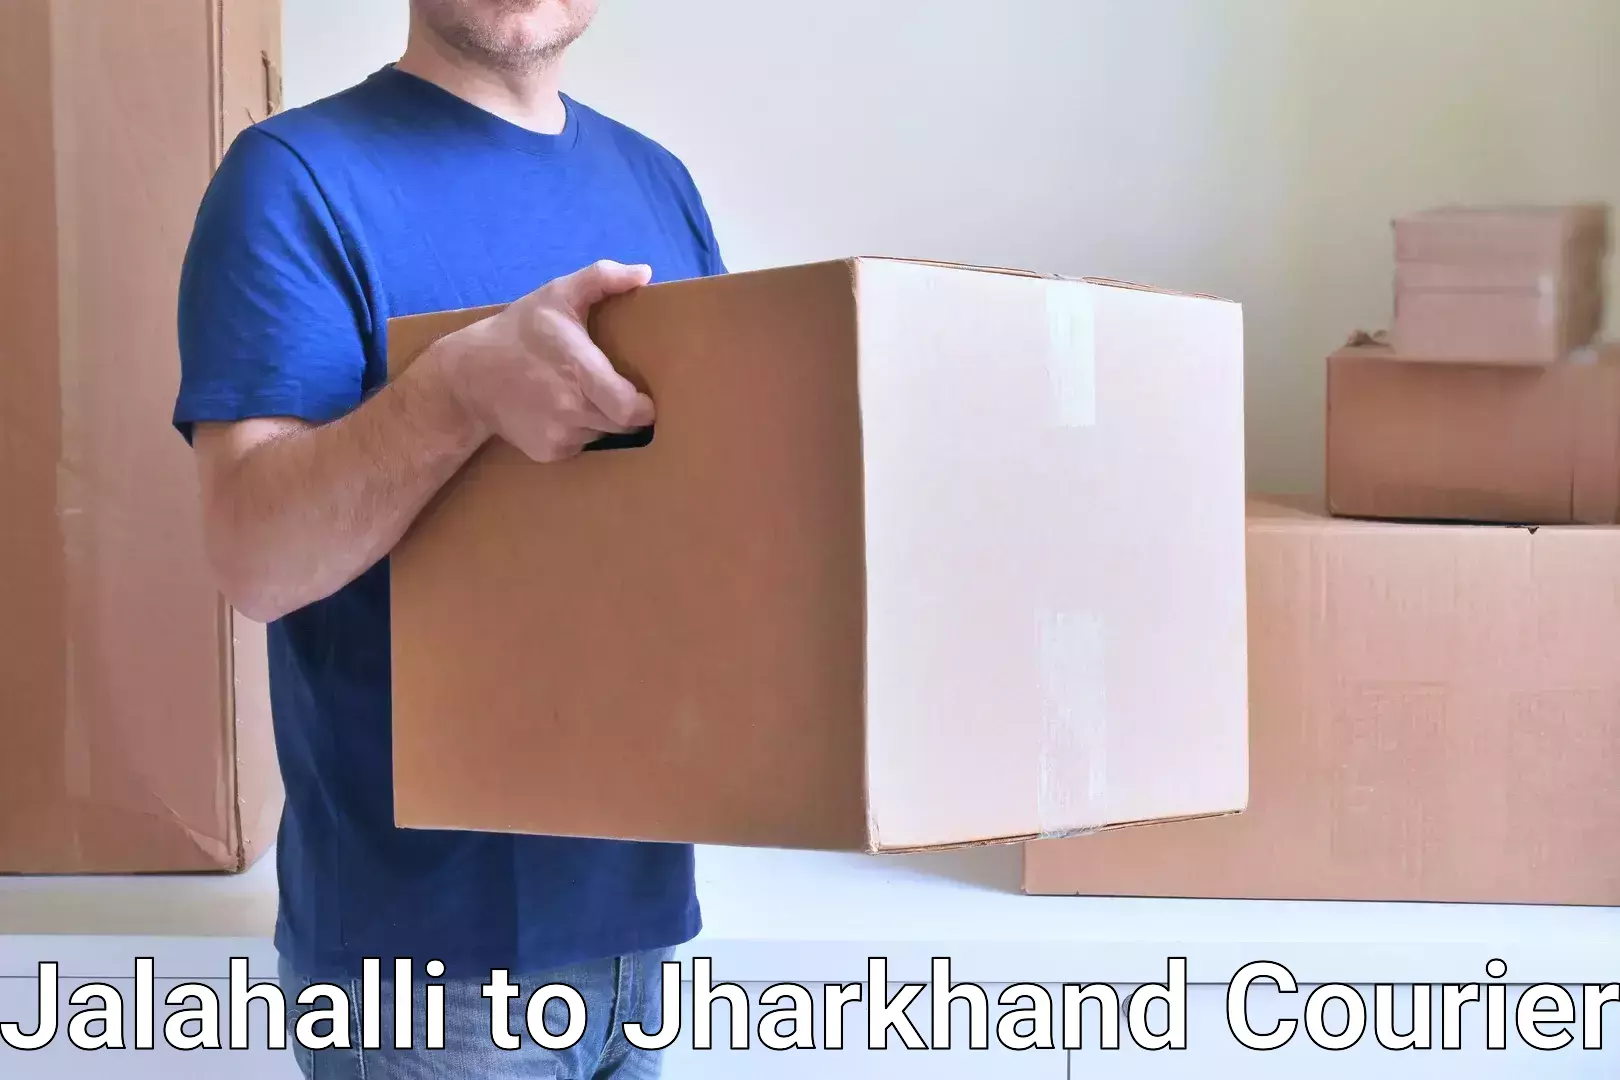 Express package handling Jalahalli to Bero Ranchi